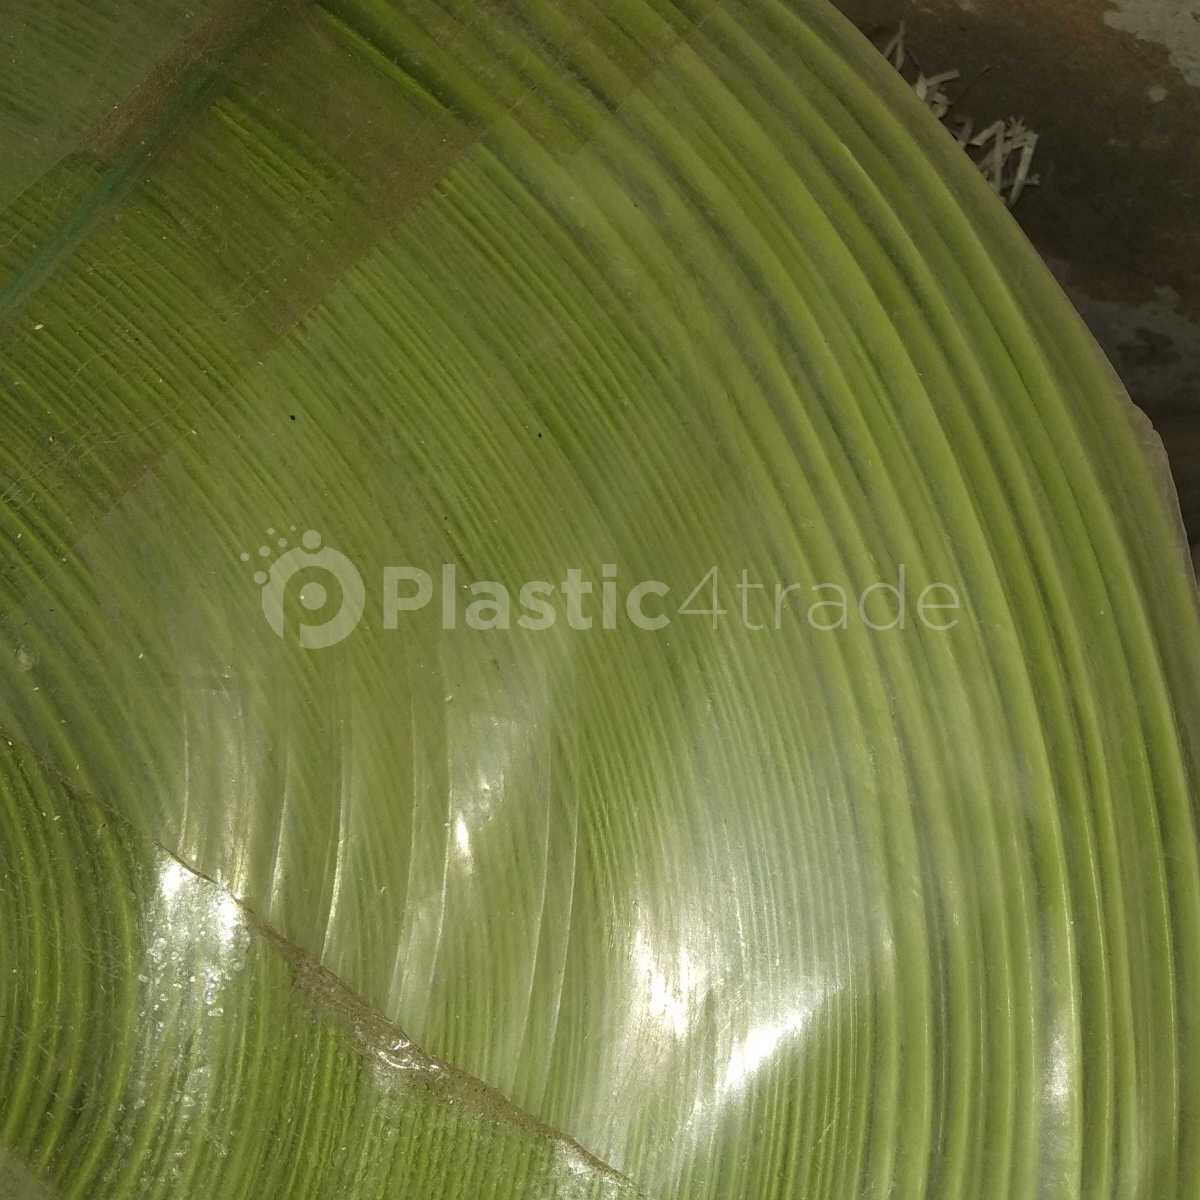 NATURAL LDPE FILM SCRAP LDPE Reprocess Granule Film Grade madhya pradesh india Plastic4trade